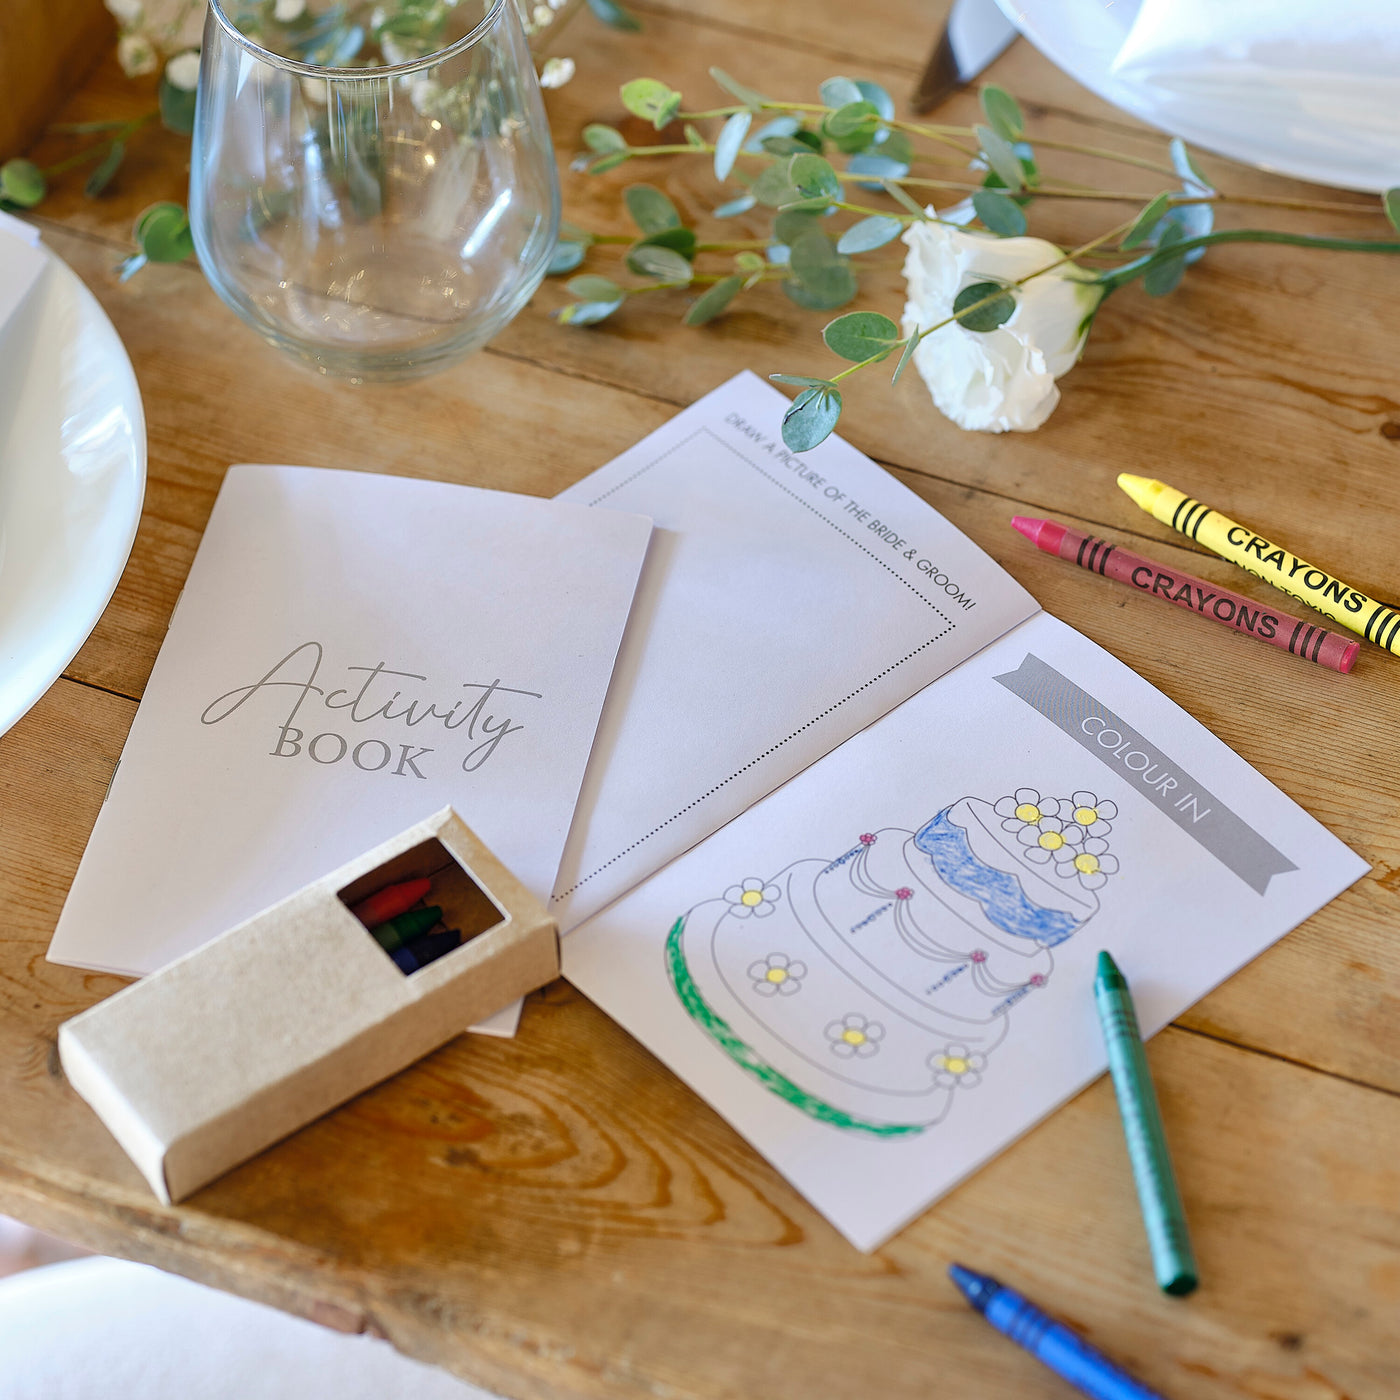 Children's Wedding Activity Kit